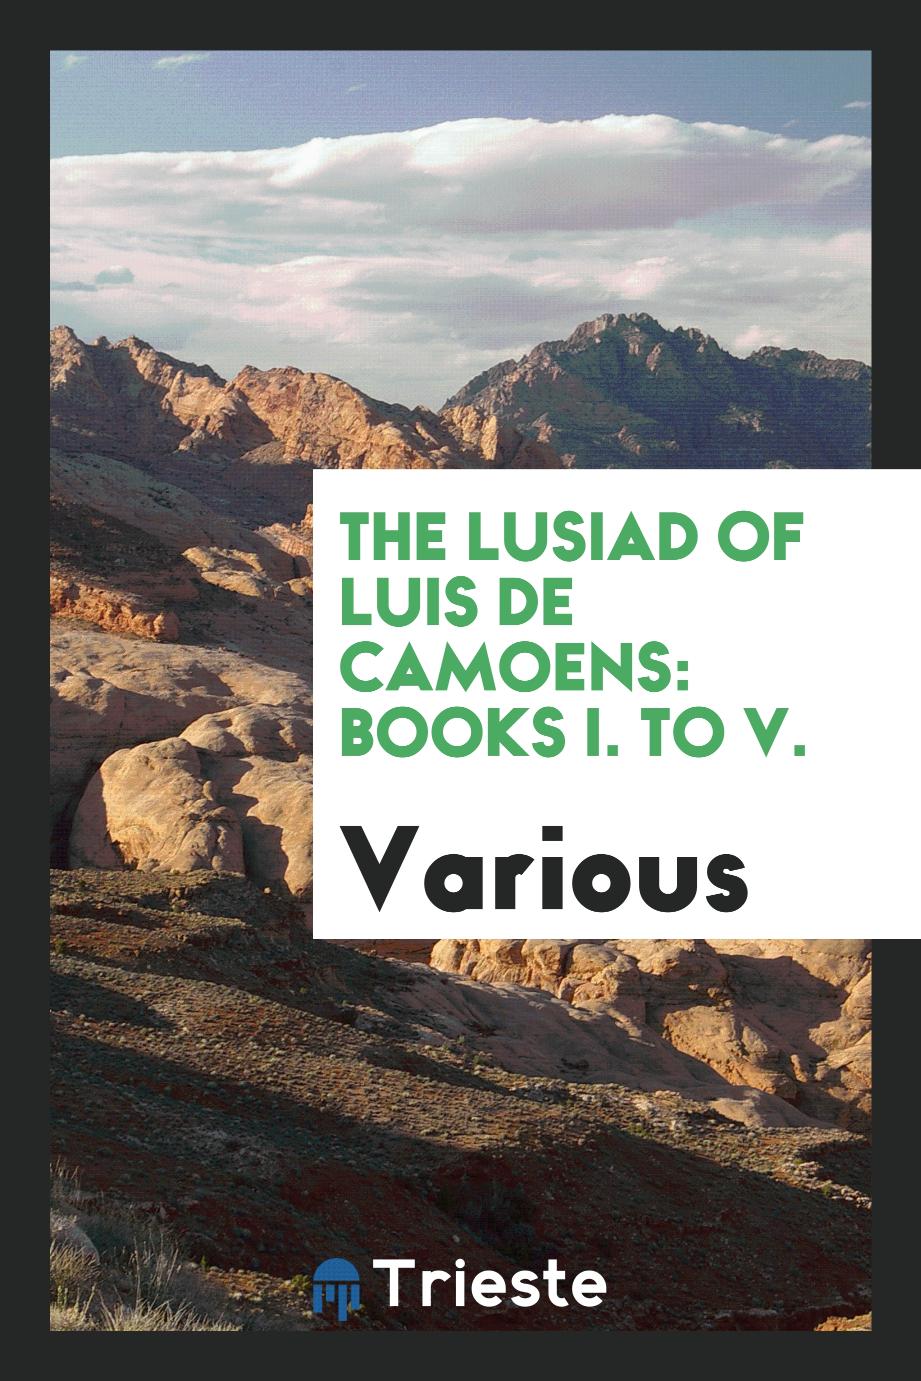 The Lusiad of Luis de Camoens: books I. to V.